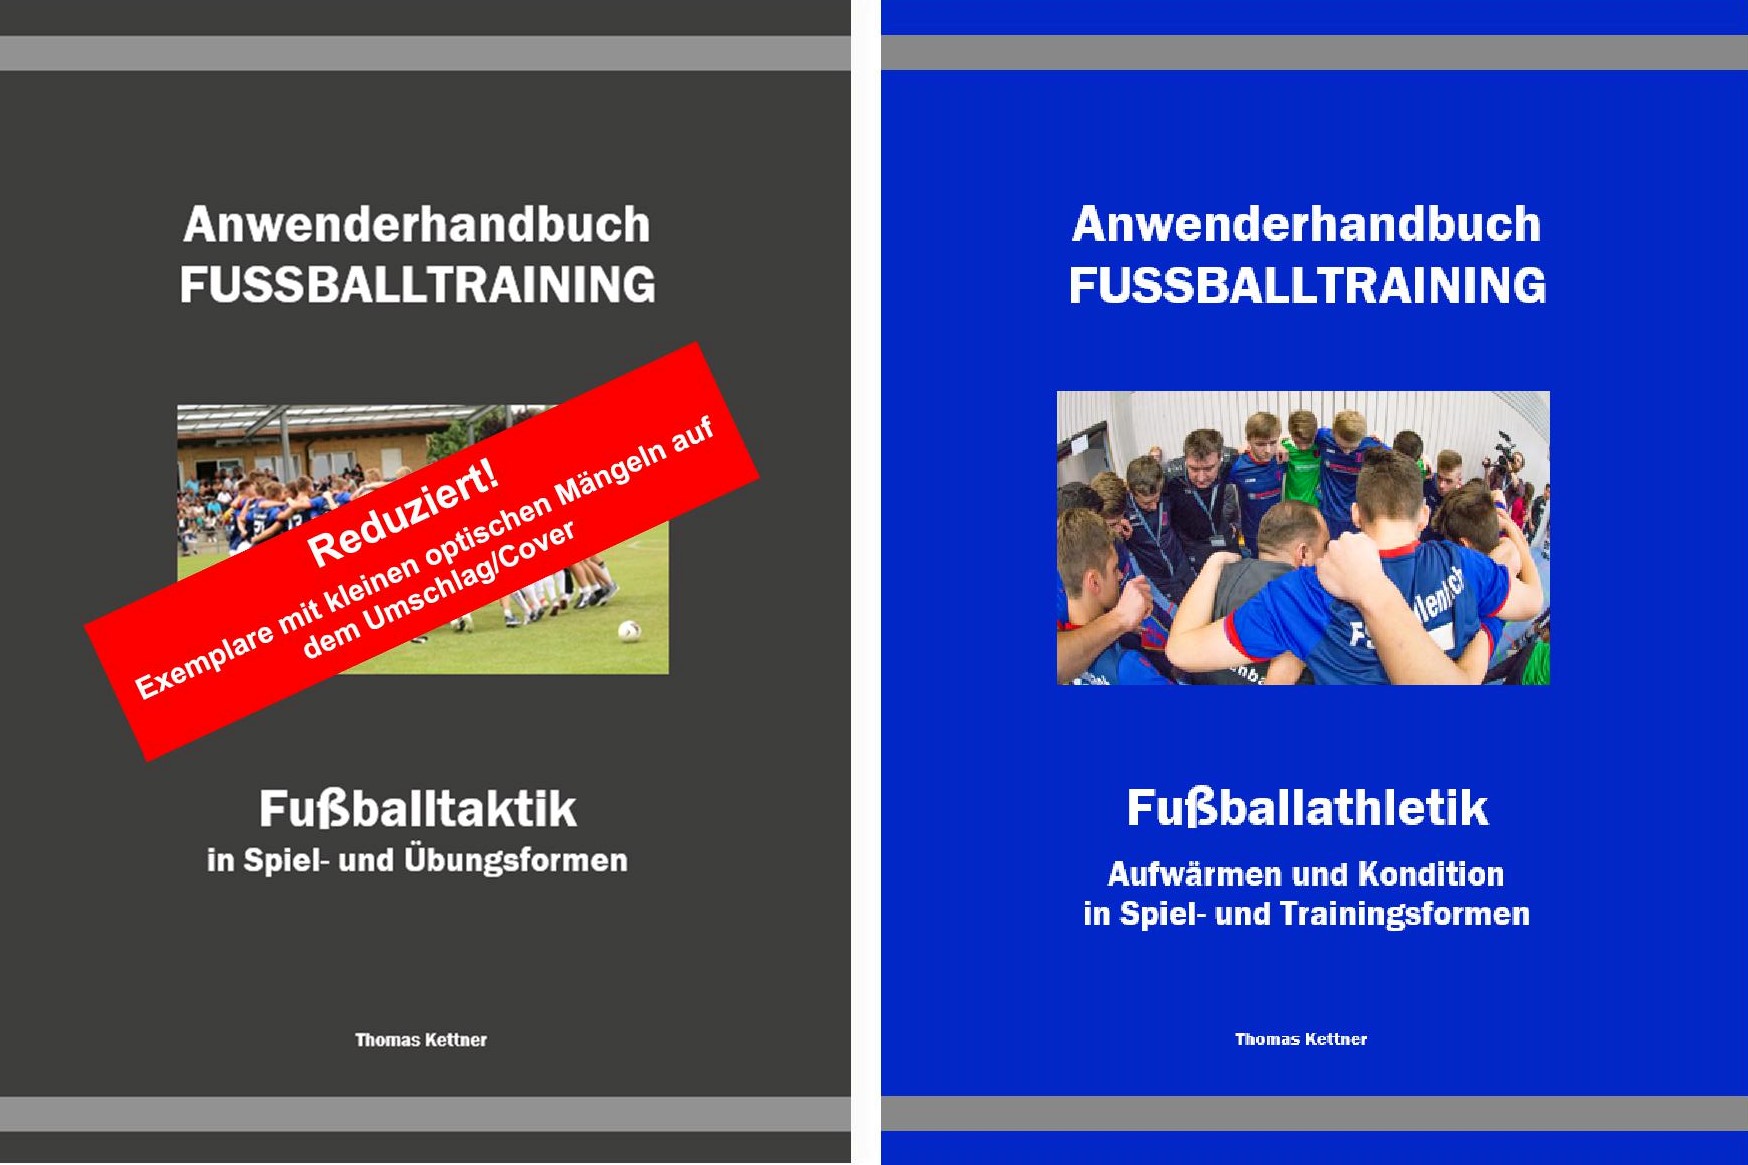 Beide Anwenderhandbücher zusammen<br> Das Taktik-Buch mit kleinen Mängeln am Cover/Umschlag. <br> Sonderpreis: 75,- €, zzgl. Versand